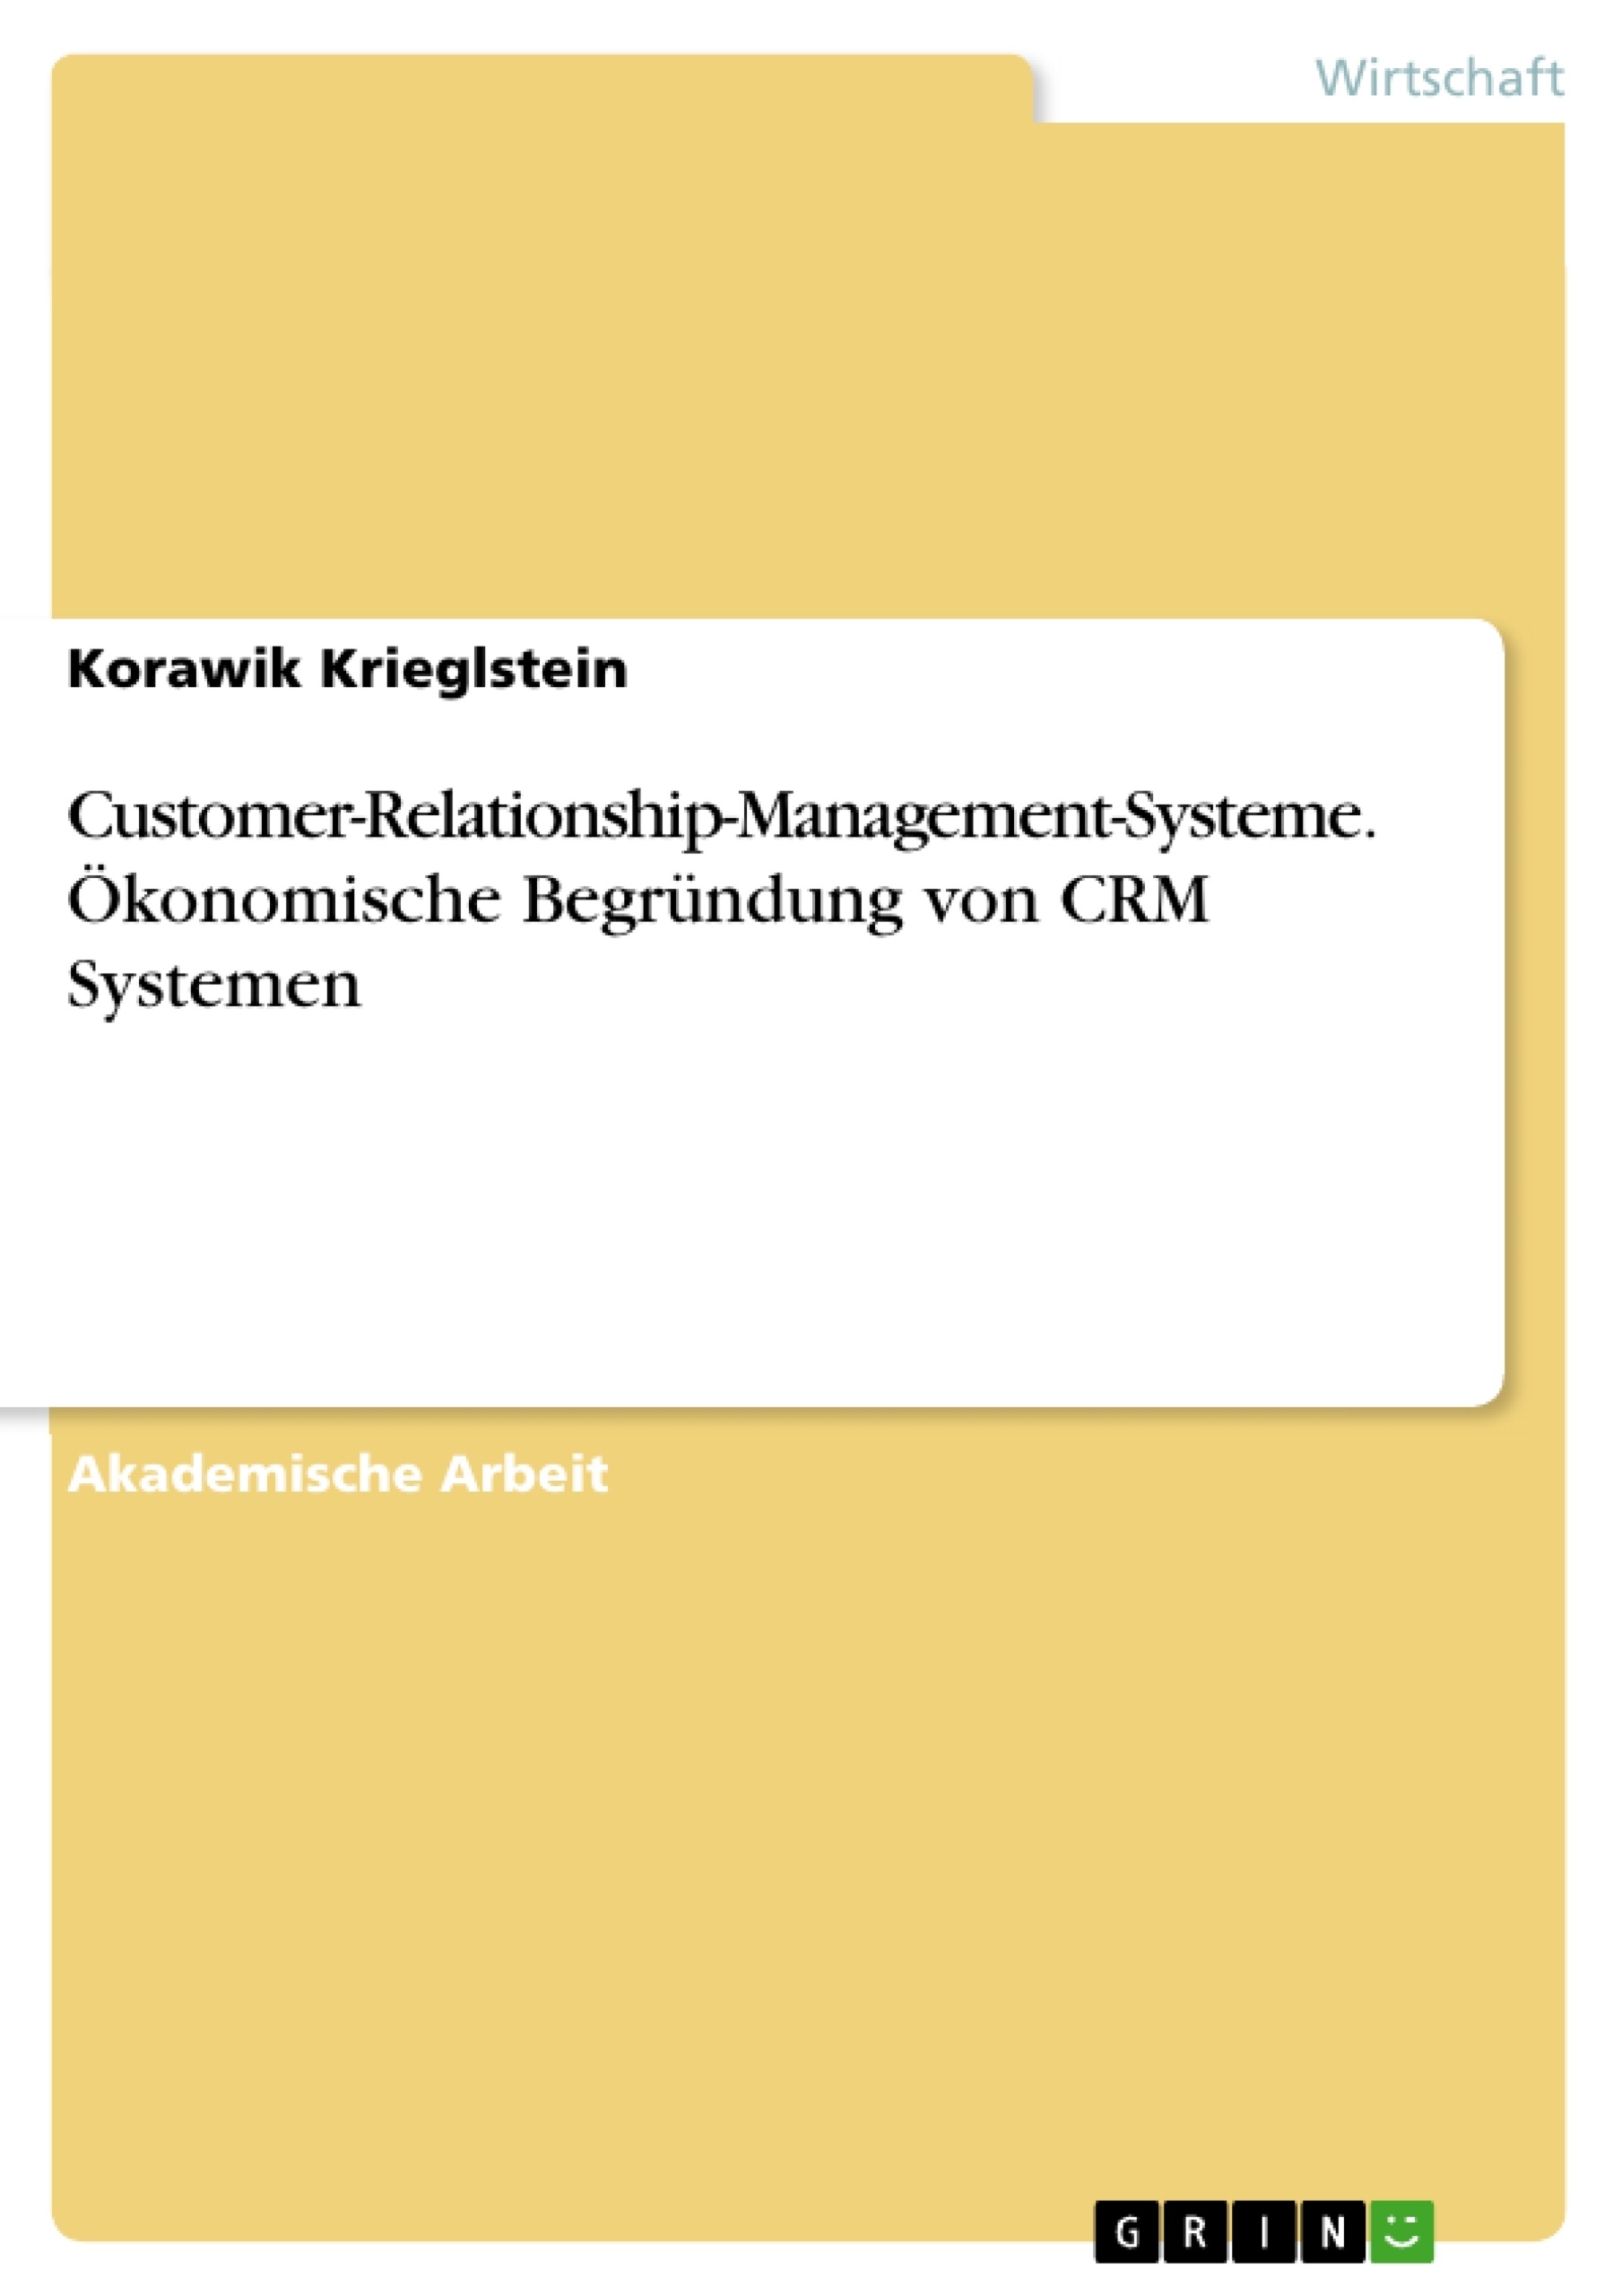 Titre: Customer-Relationship-Management-Systeme. Ökonomische Begründung von CRM Systemen